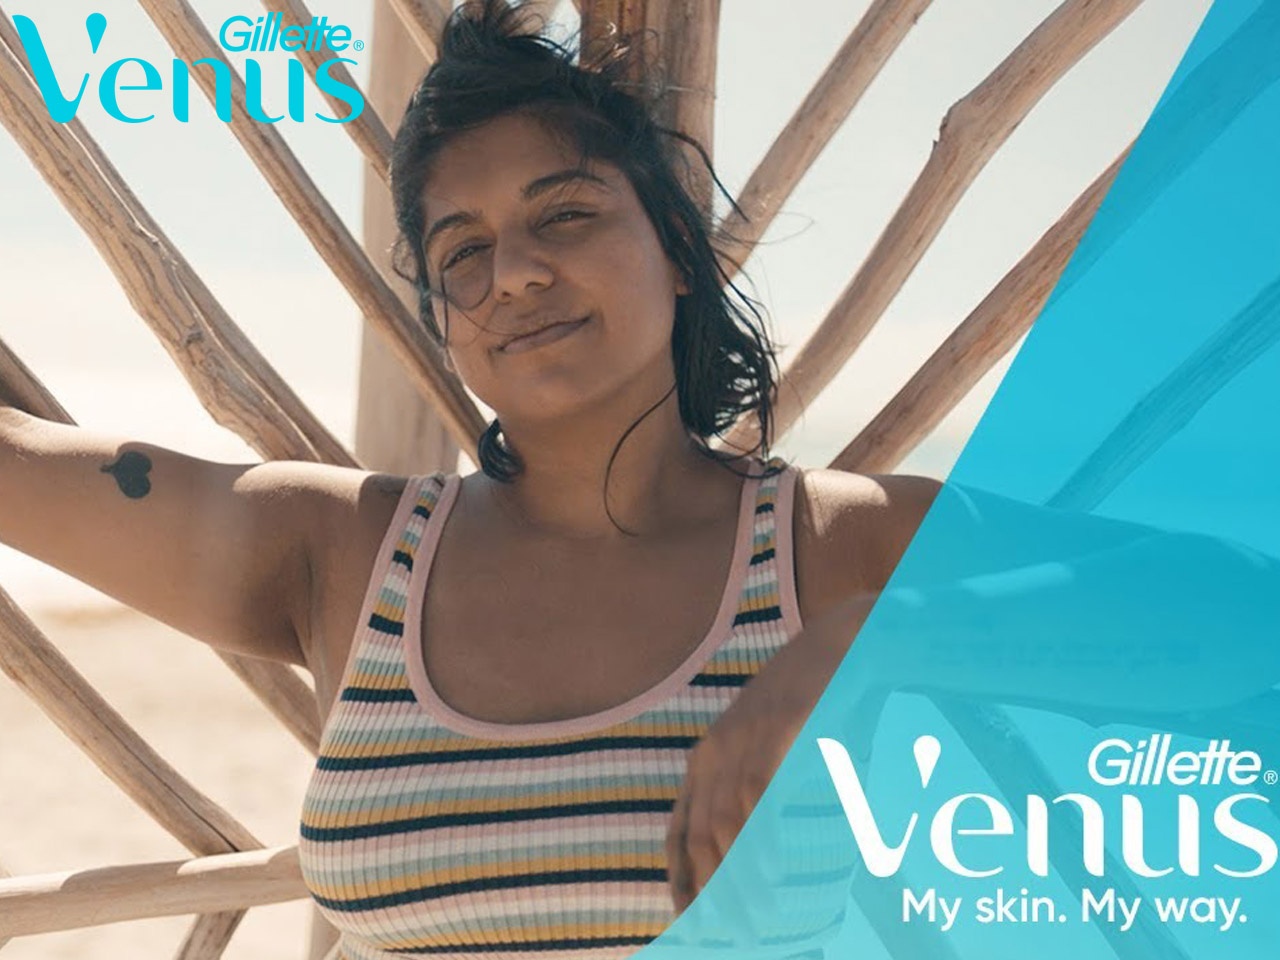 « My Skin, My Way » de Gillette Venus : pour des femmes « vraies » et bien dans leur peau